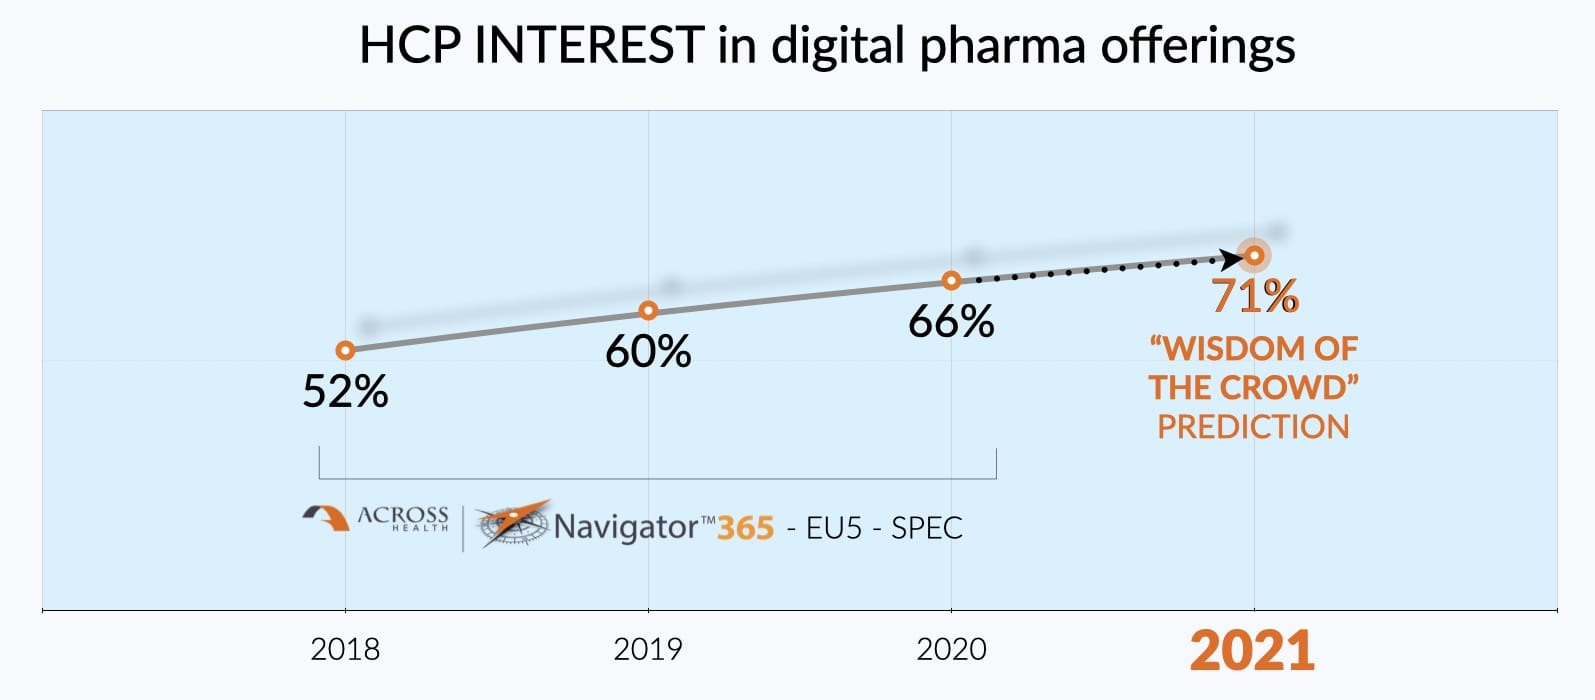 HCP Interest in digital pharma offerings for 2021